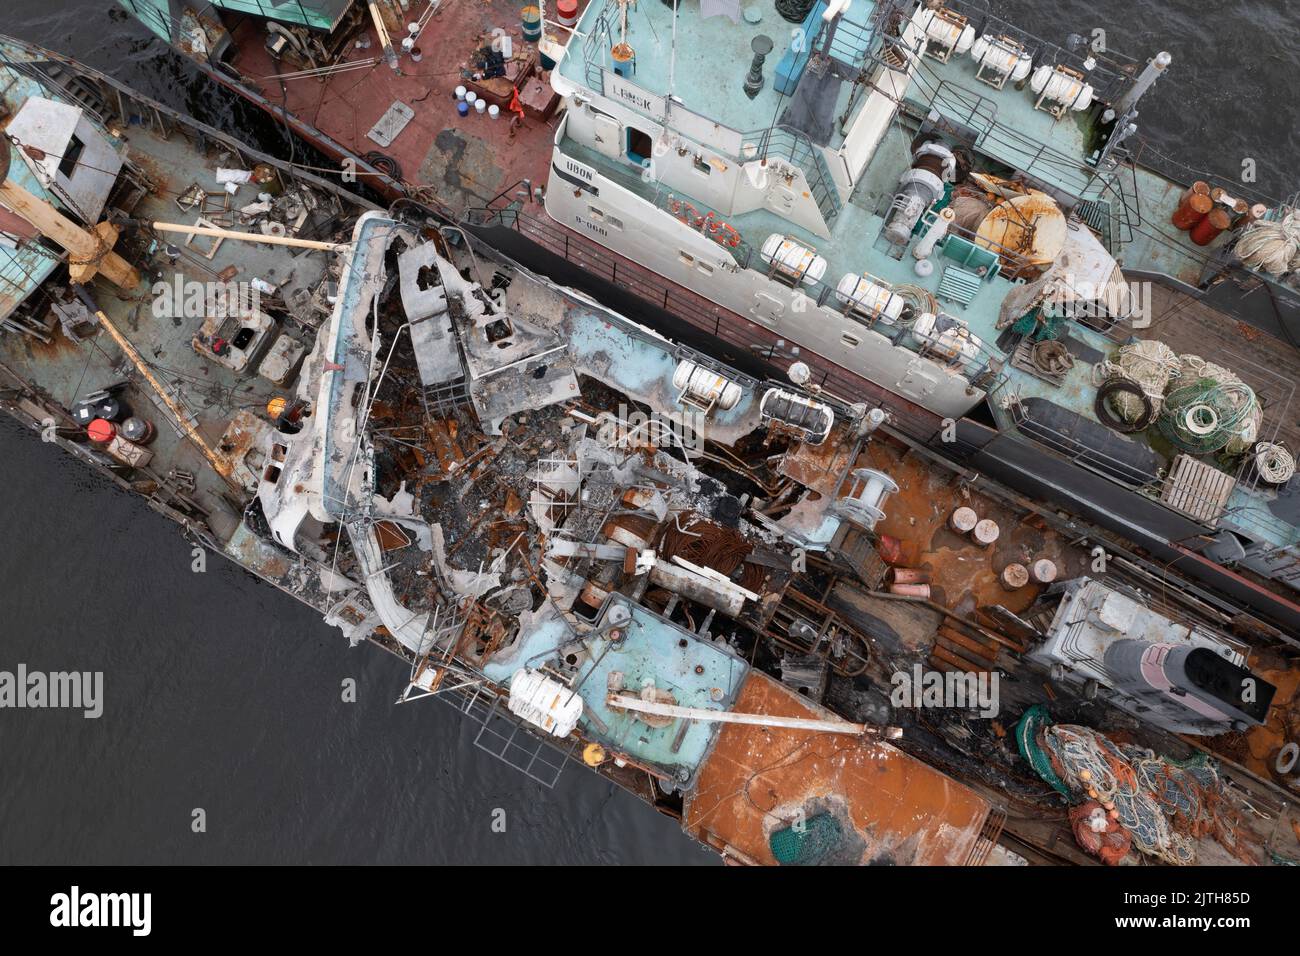 Vladivostok, Russia - 23 luglio 2022: Il peschereccio bruciato su un ormeggio con un'altra nave. Foto Stock